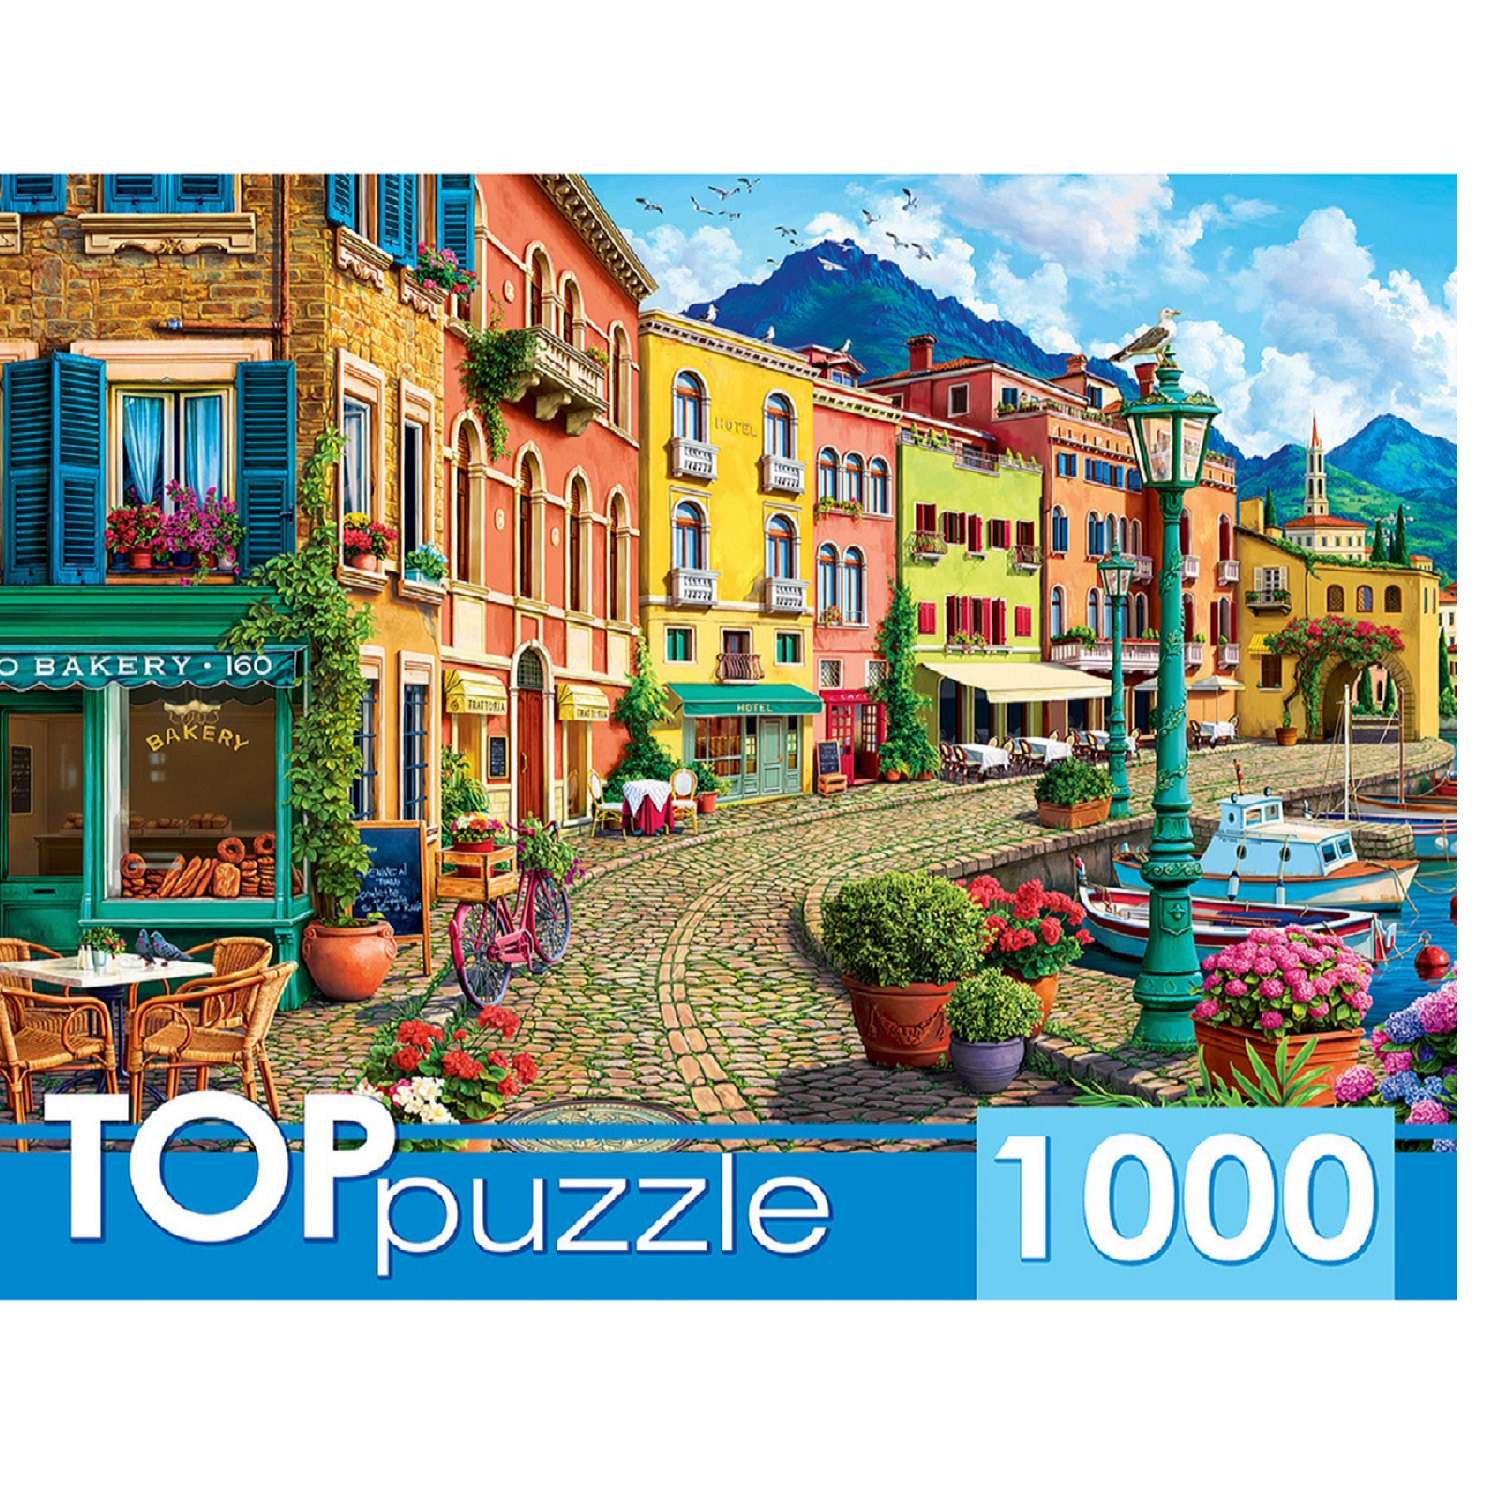 TOPpuzzle. Пазлы. Рыжий кот 1000 элементов Европейская солнечная набережная - фото 1